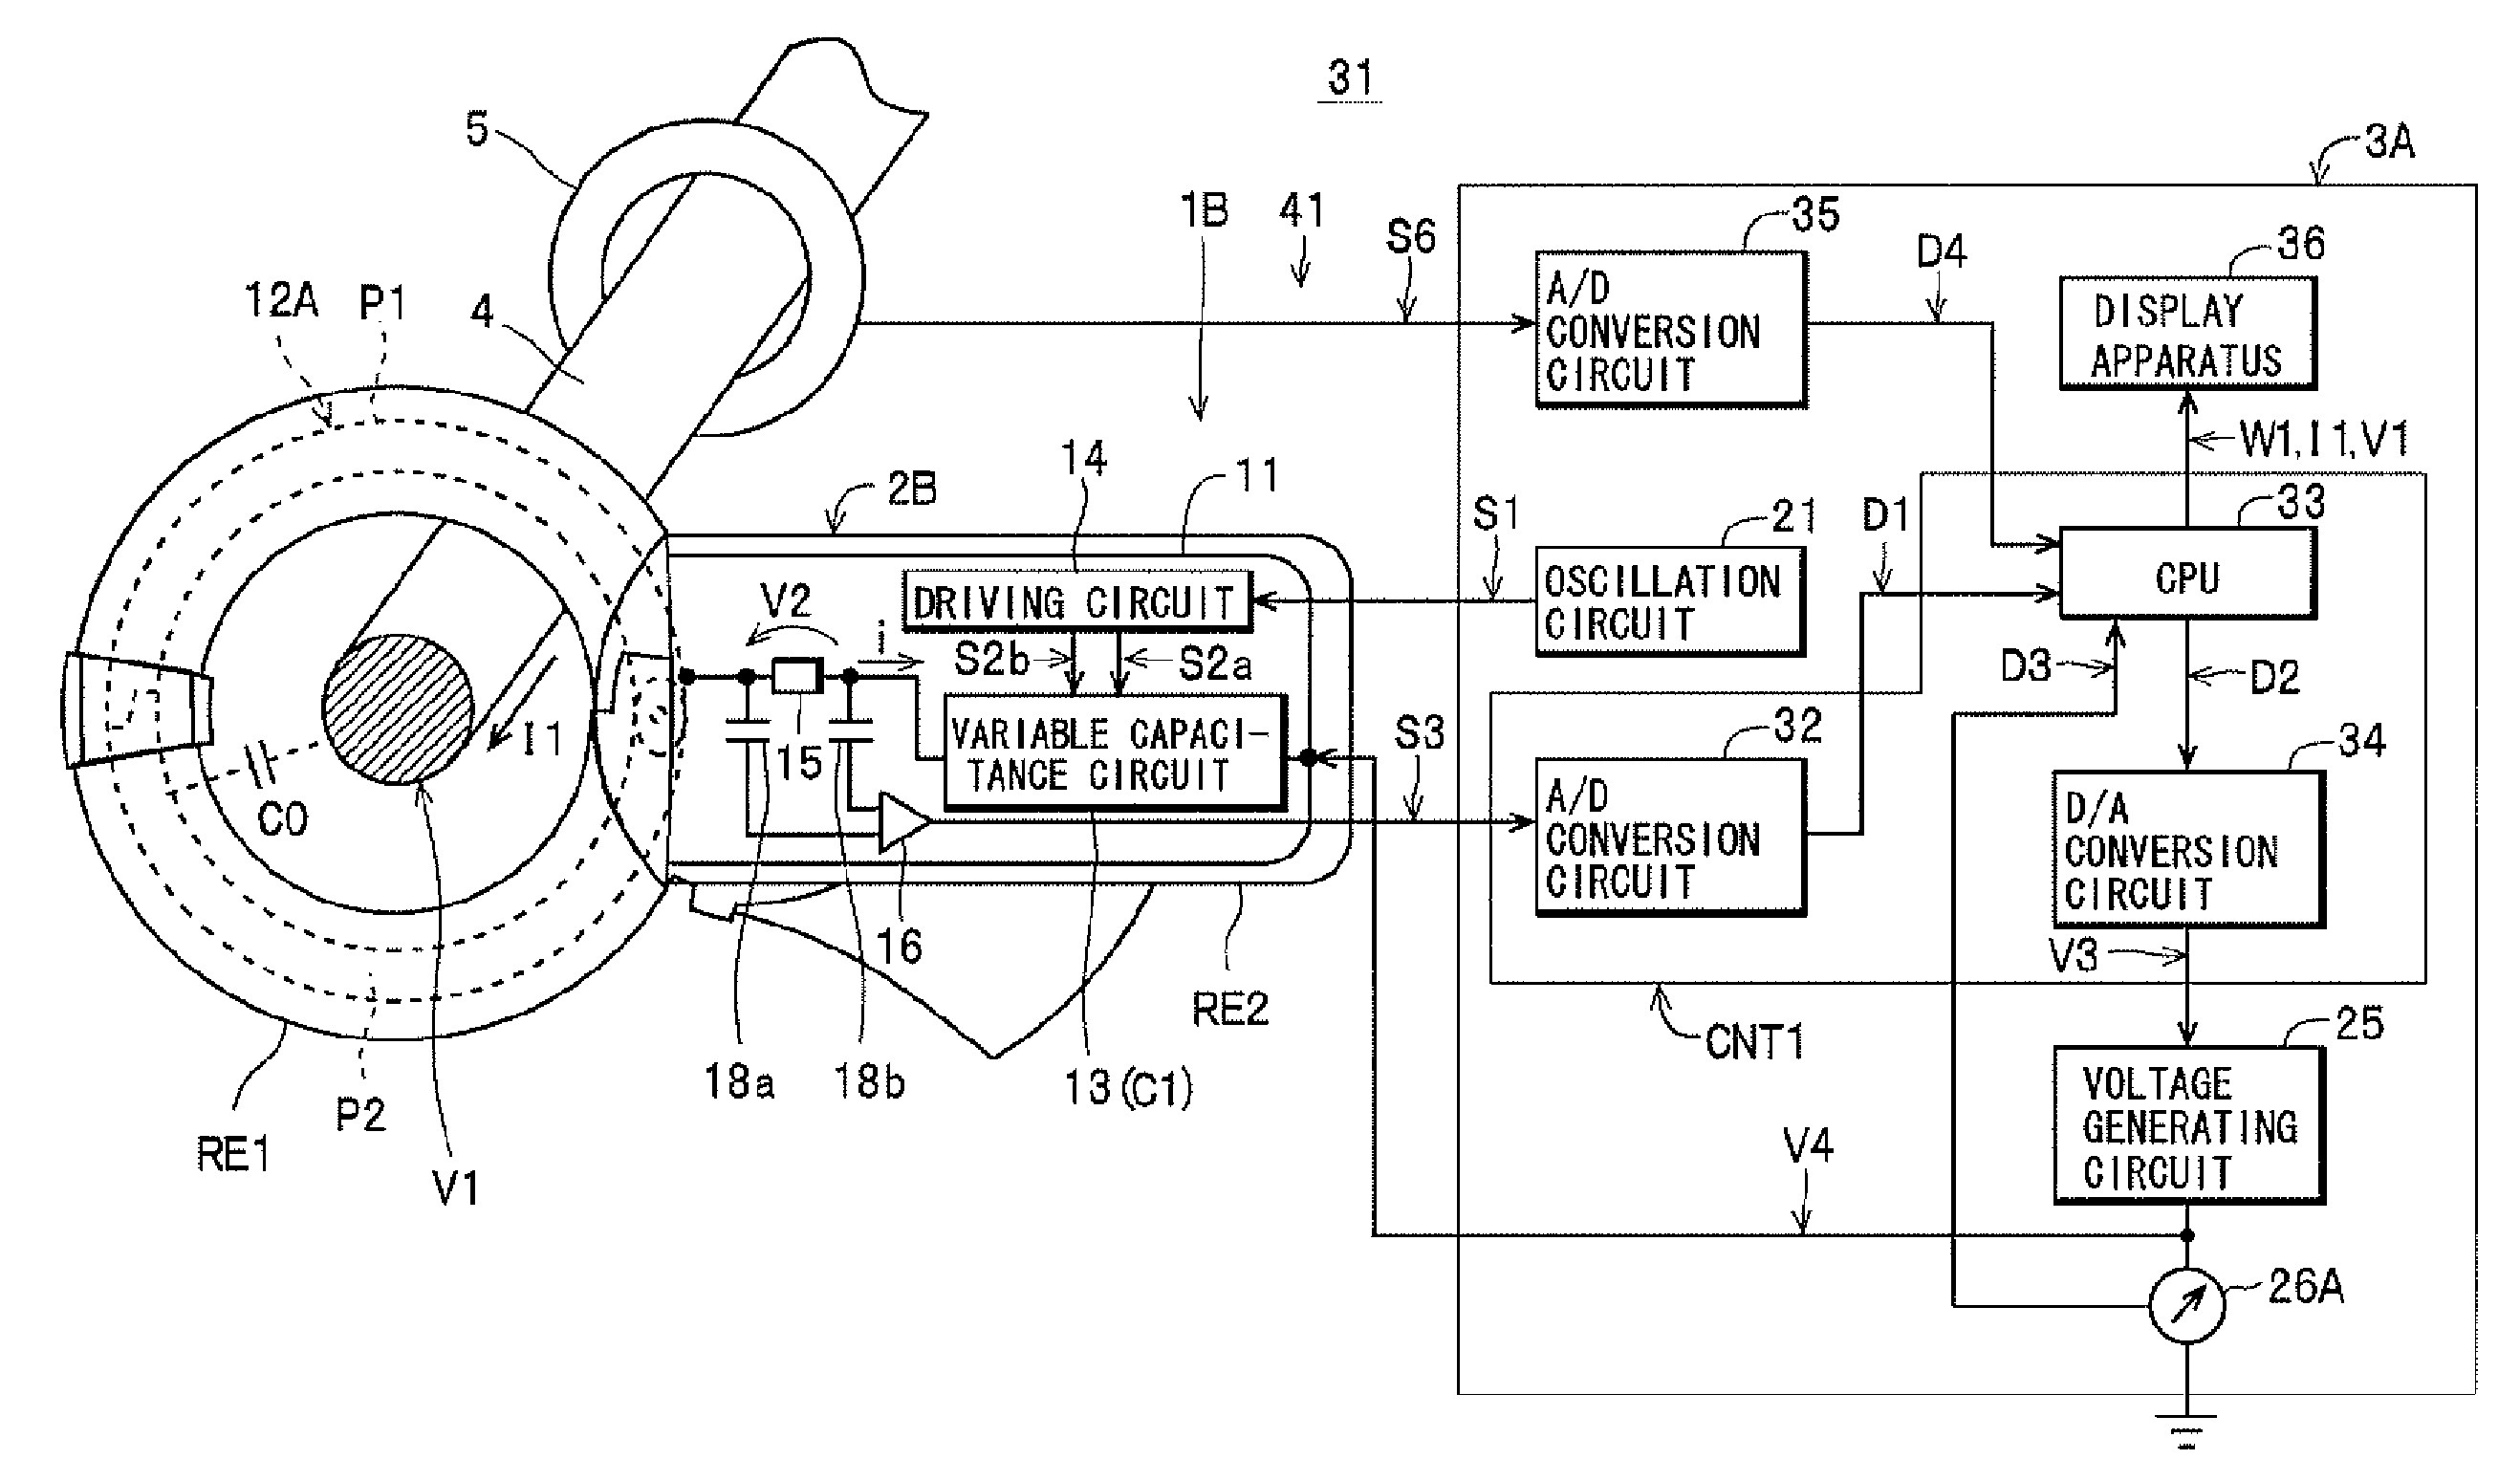 Voltage measuring apparatus and power measuring apparatus